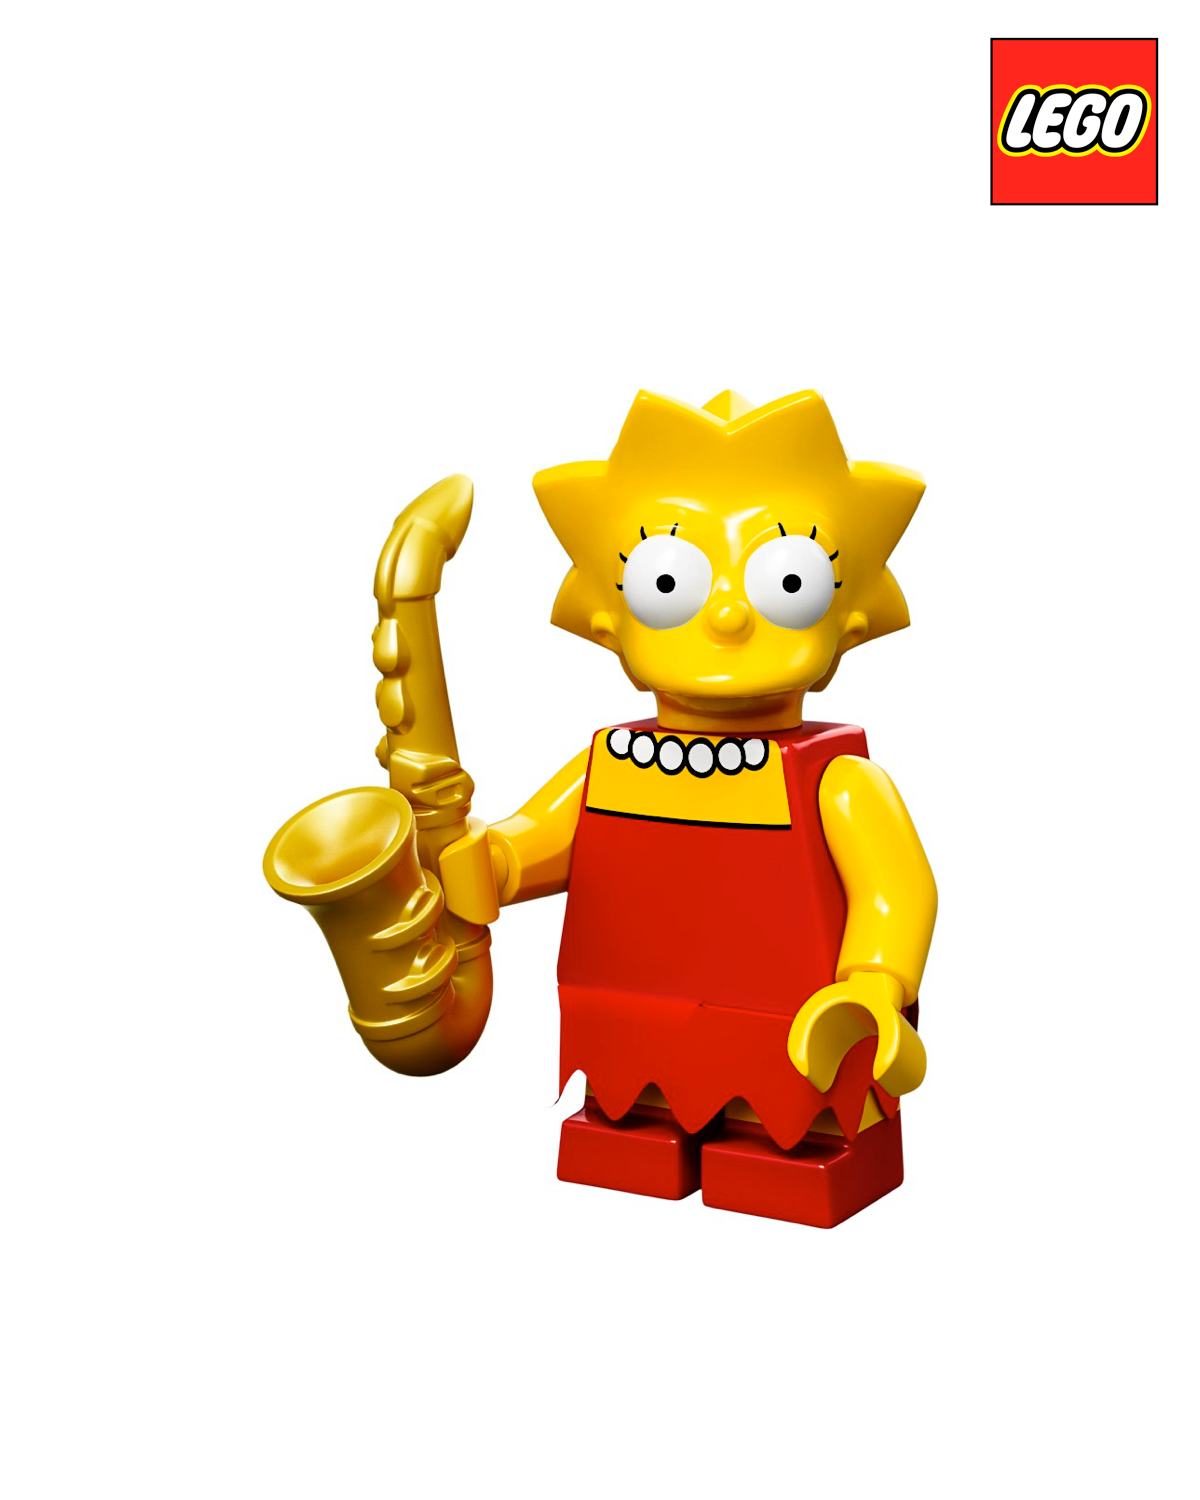 Lisa Simpson - The Simpsons - Series 1  | LEGO Minifigure | NEW CMF